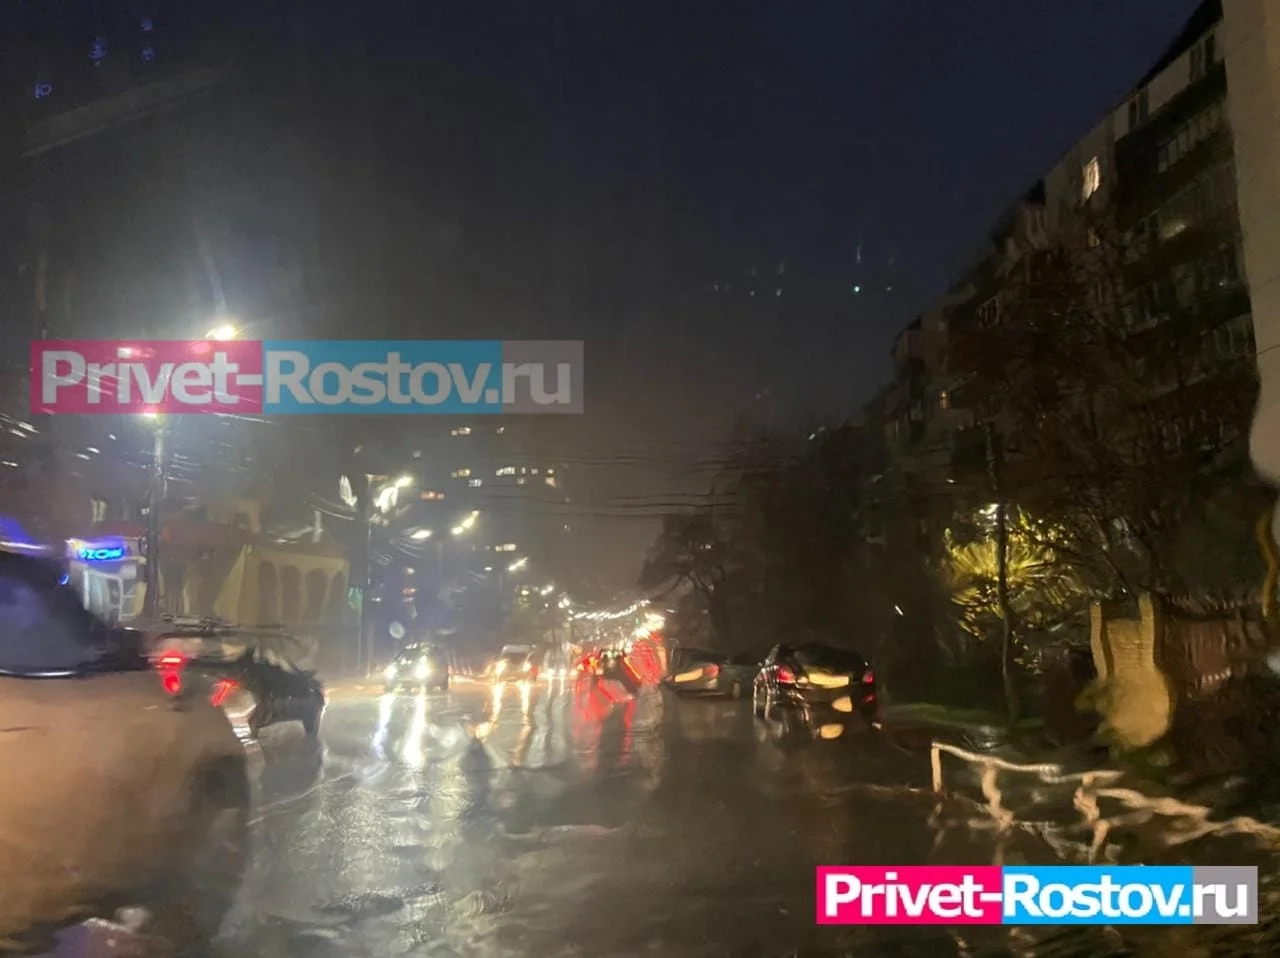 В Ростове на 5 сентября объявили штормовое предупреждение из-за сильных ливней и ветра